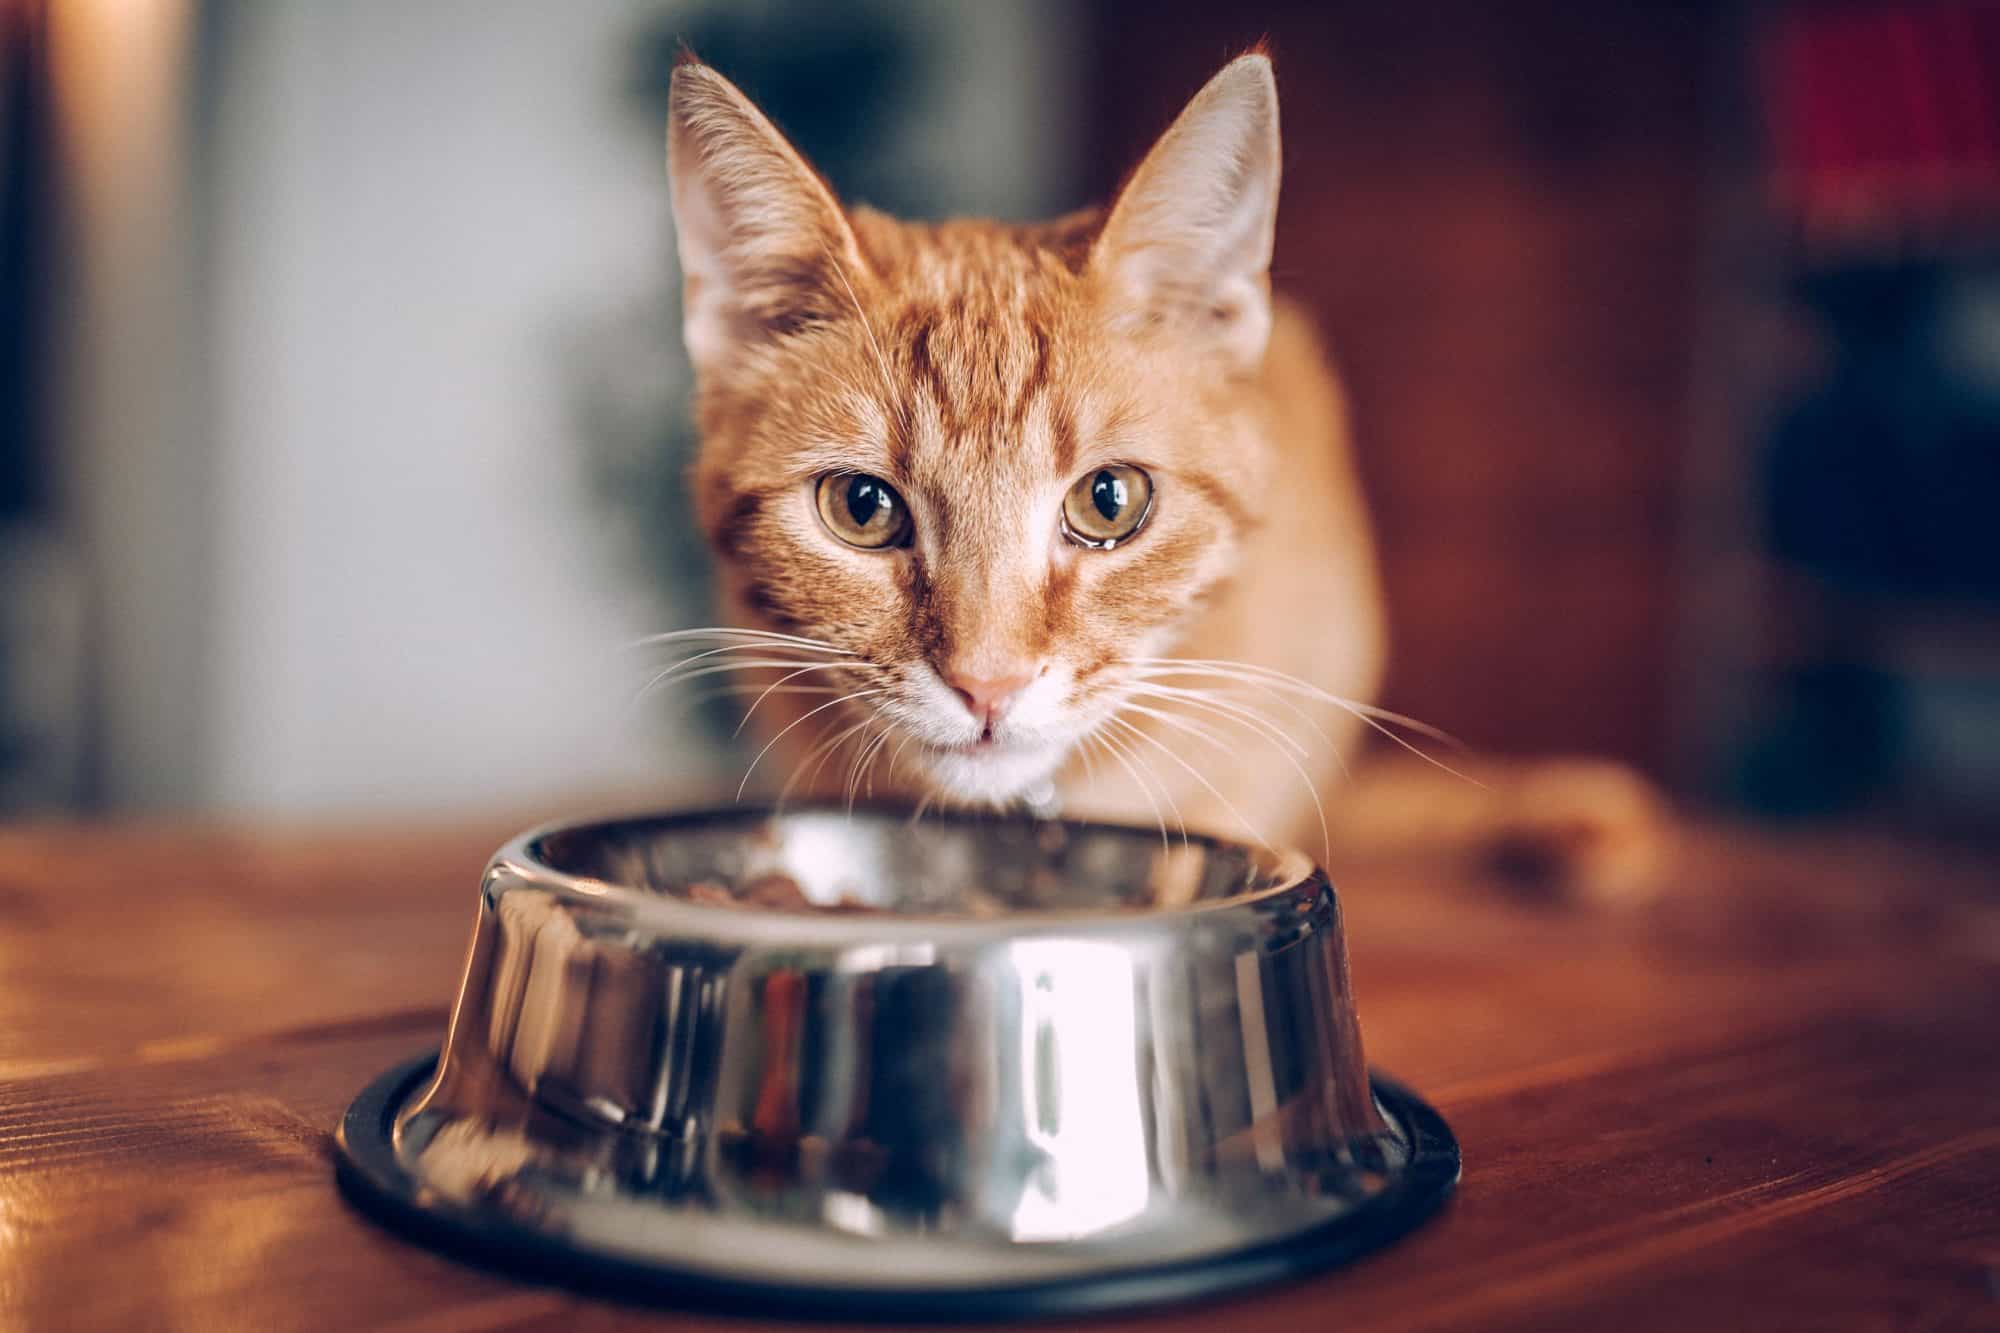 Gato atigrado anaranjado que come fuera del tazón de fuente.